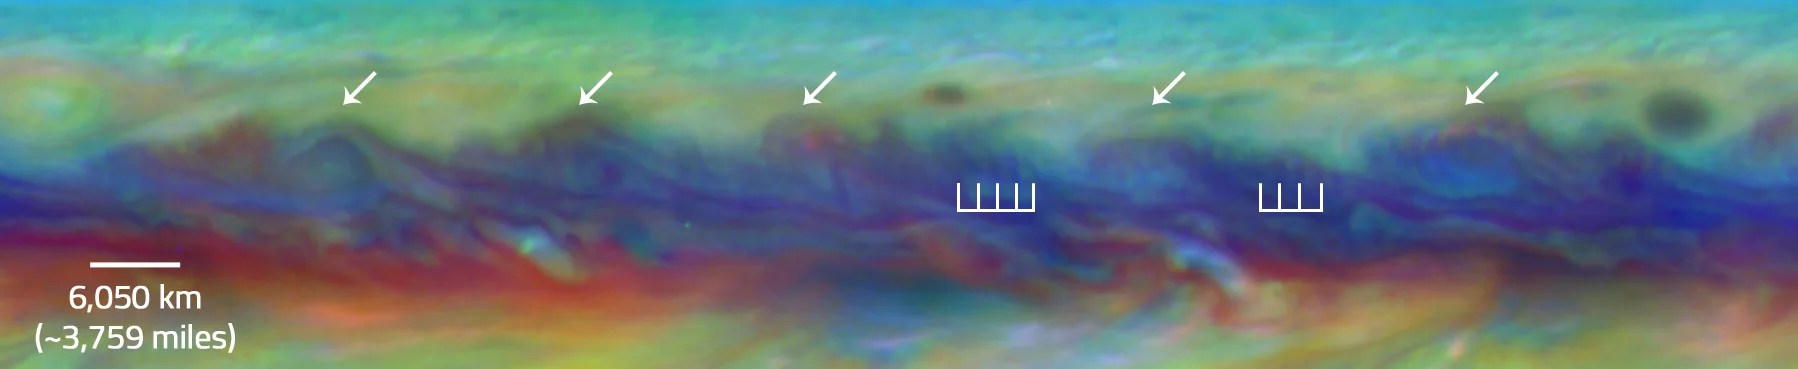 rare wave pattern in Jupiter's North Equatorial Belt